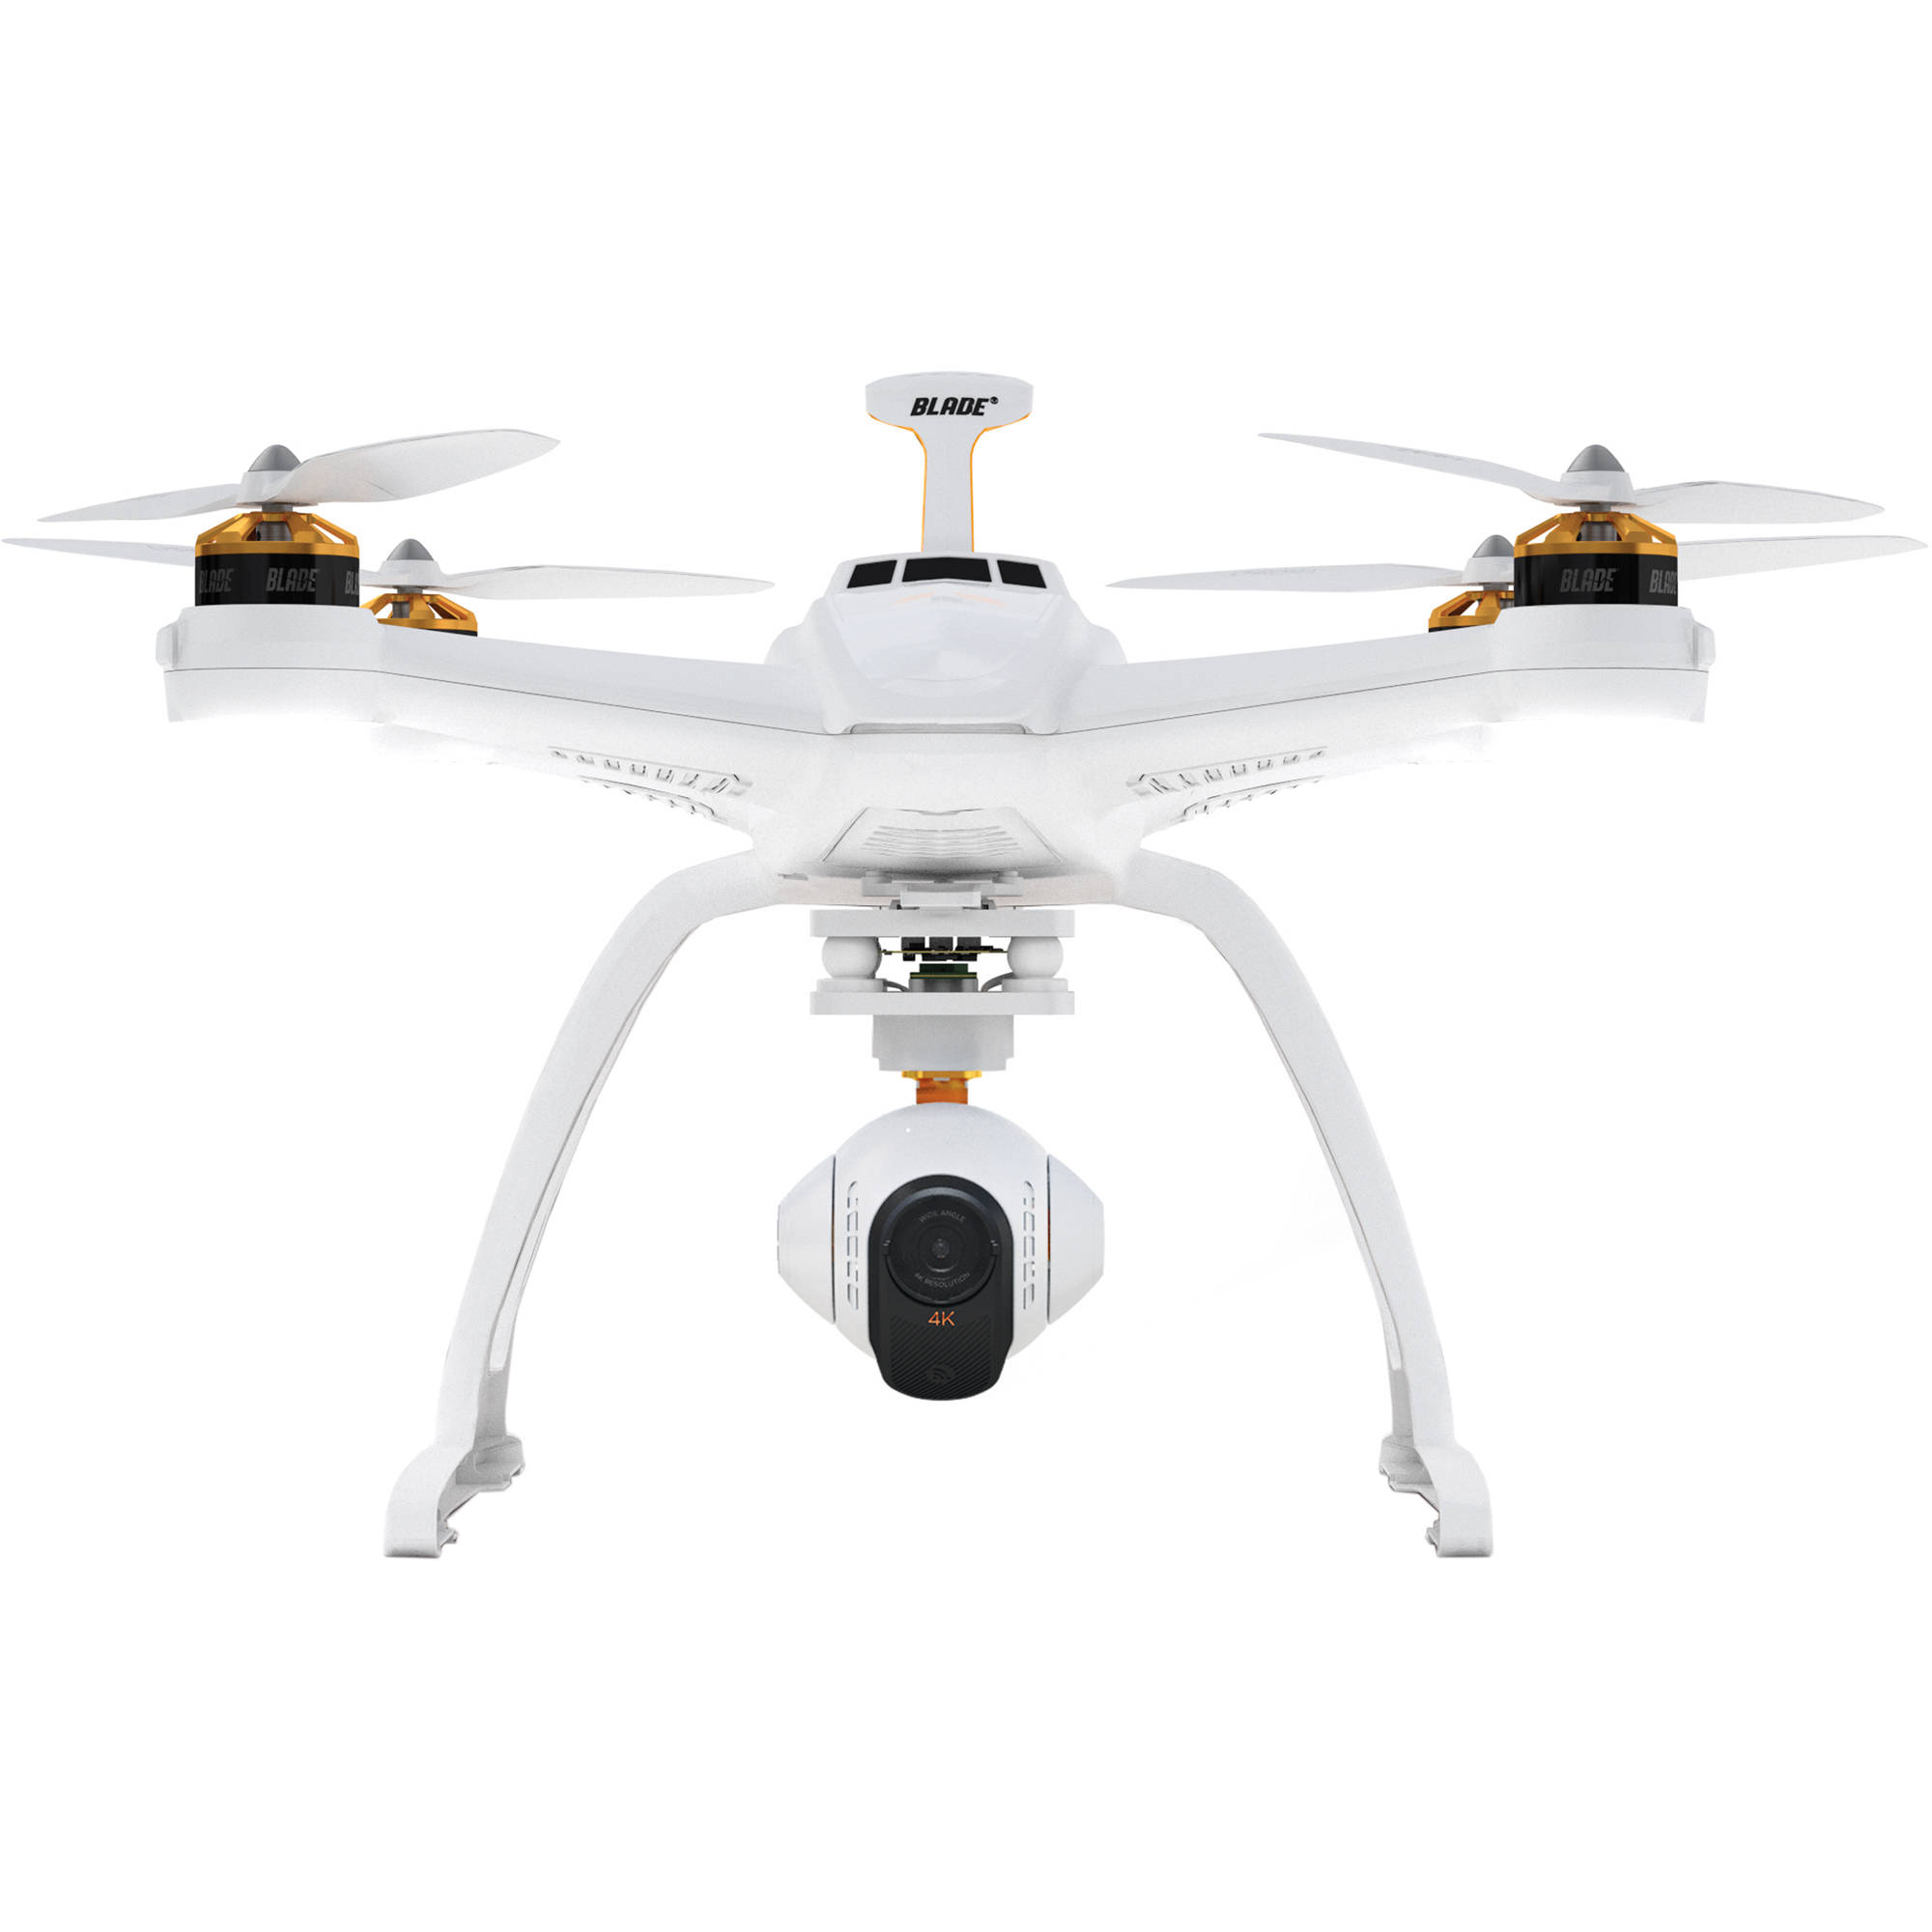 chroma 4k drone price